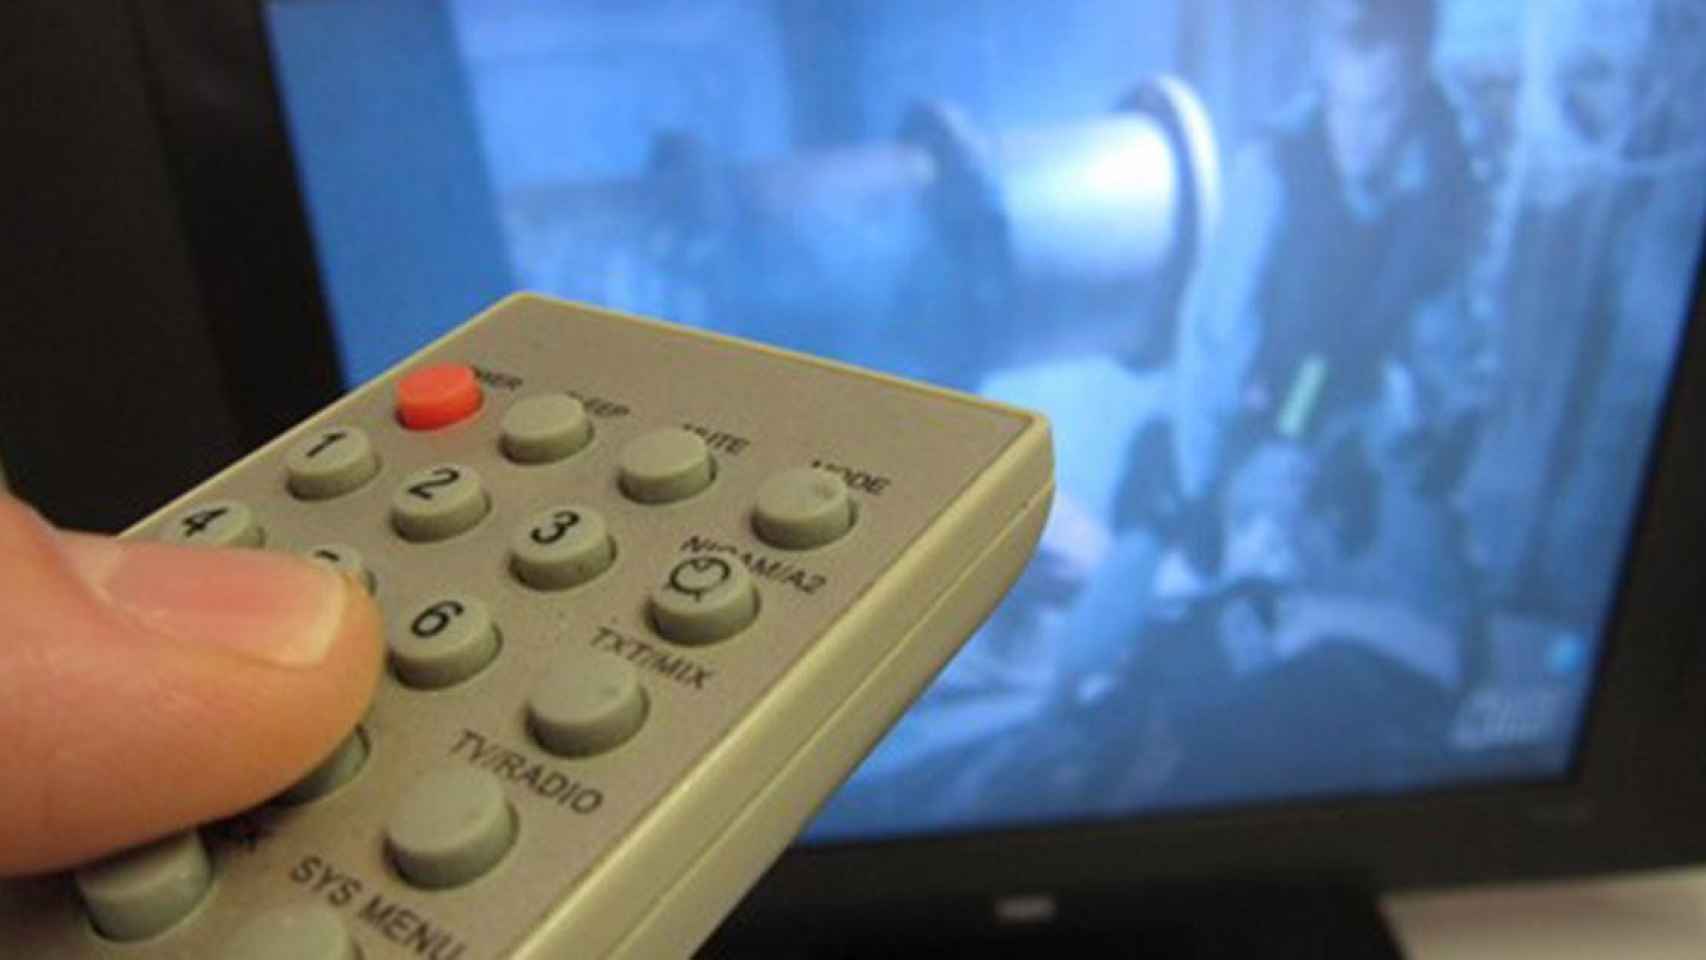 Una persona cambia de canal de televisión con un mando a distancia / EUROPA PRESS